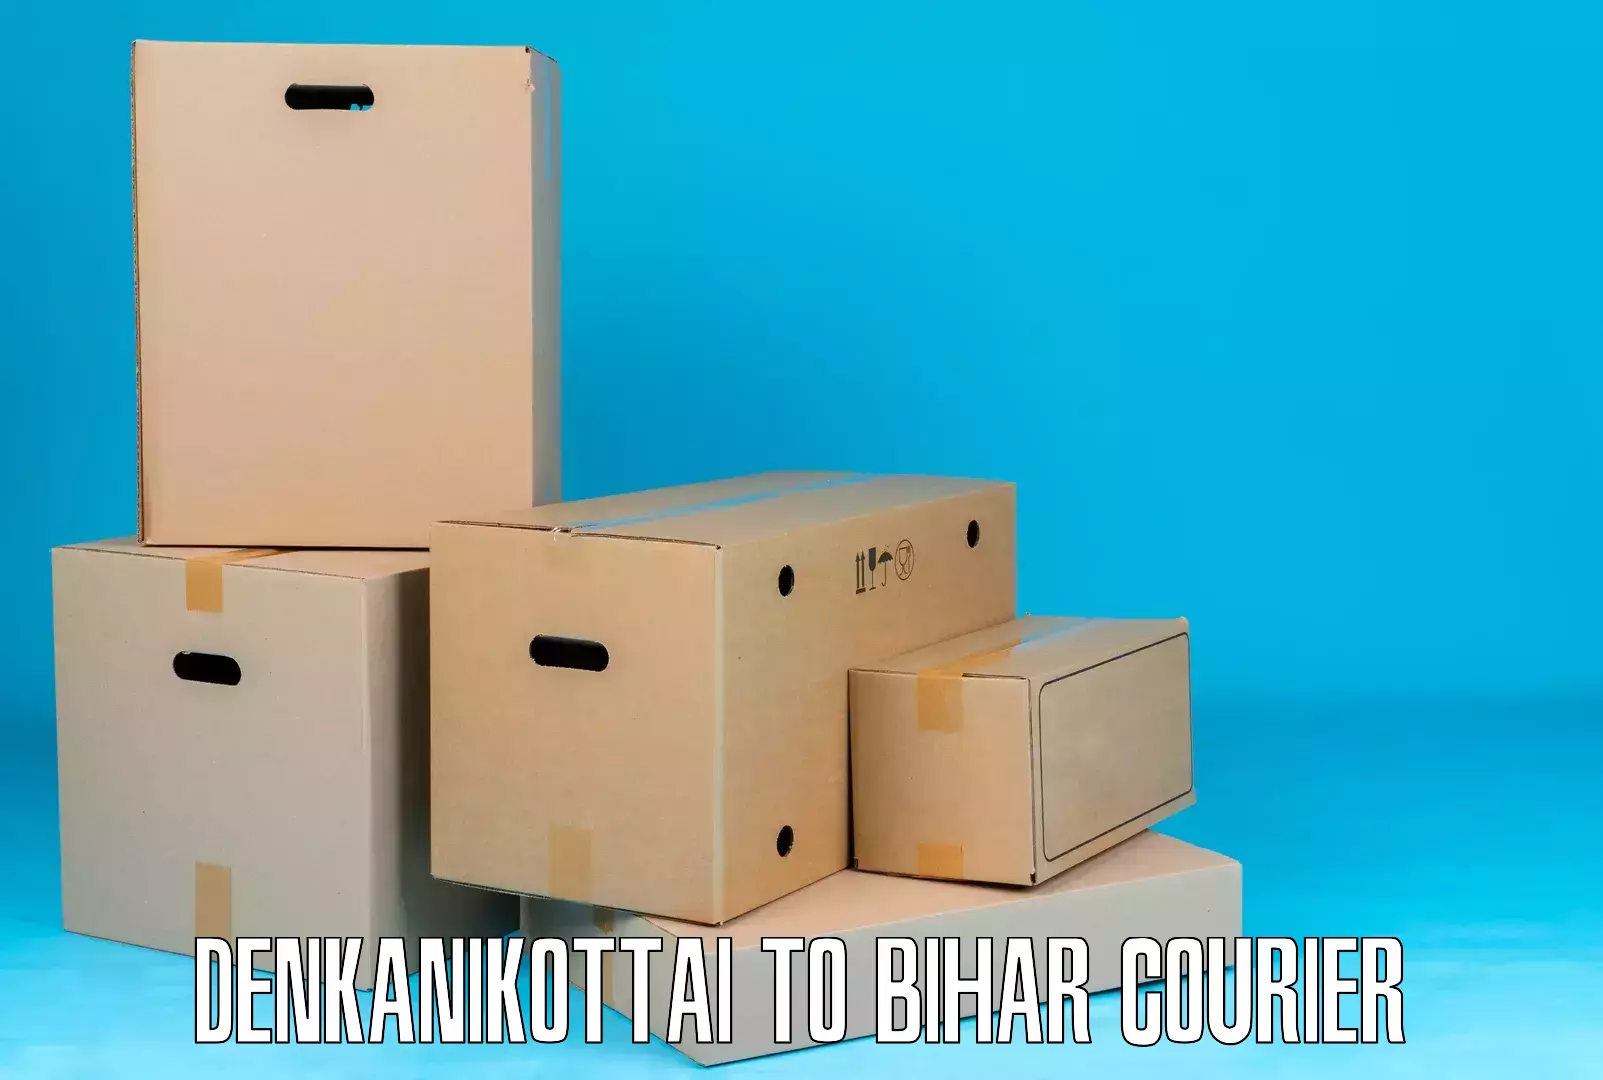 User-friendly delivery service Denkanikottai to Manihari